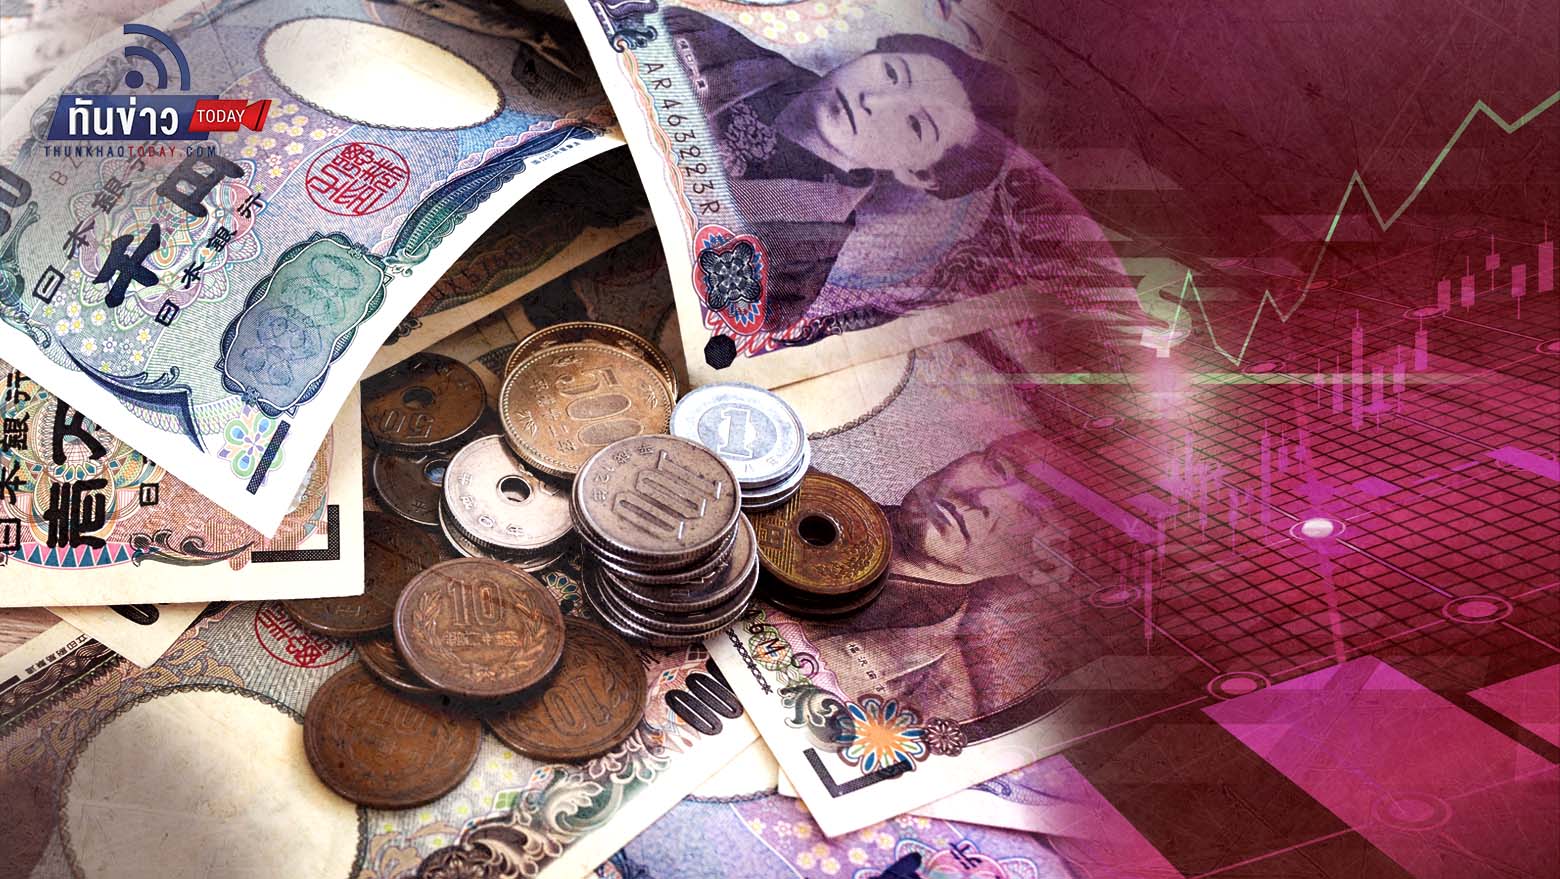 เงินเยนอ่อนค่าในรอบ 32 ปี ใกล้ 150 เมื่อเทียบดอลลาร์  จับตาญี่ปุ่นจะแทรกแซงตลาด Fx หรือไม่ | ทันข่าว Today